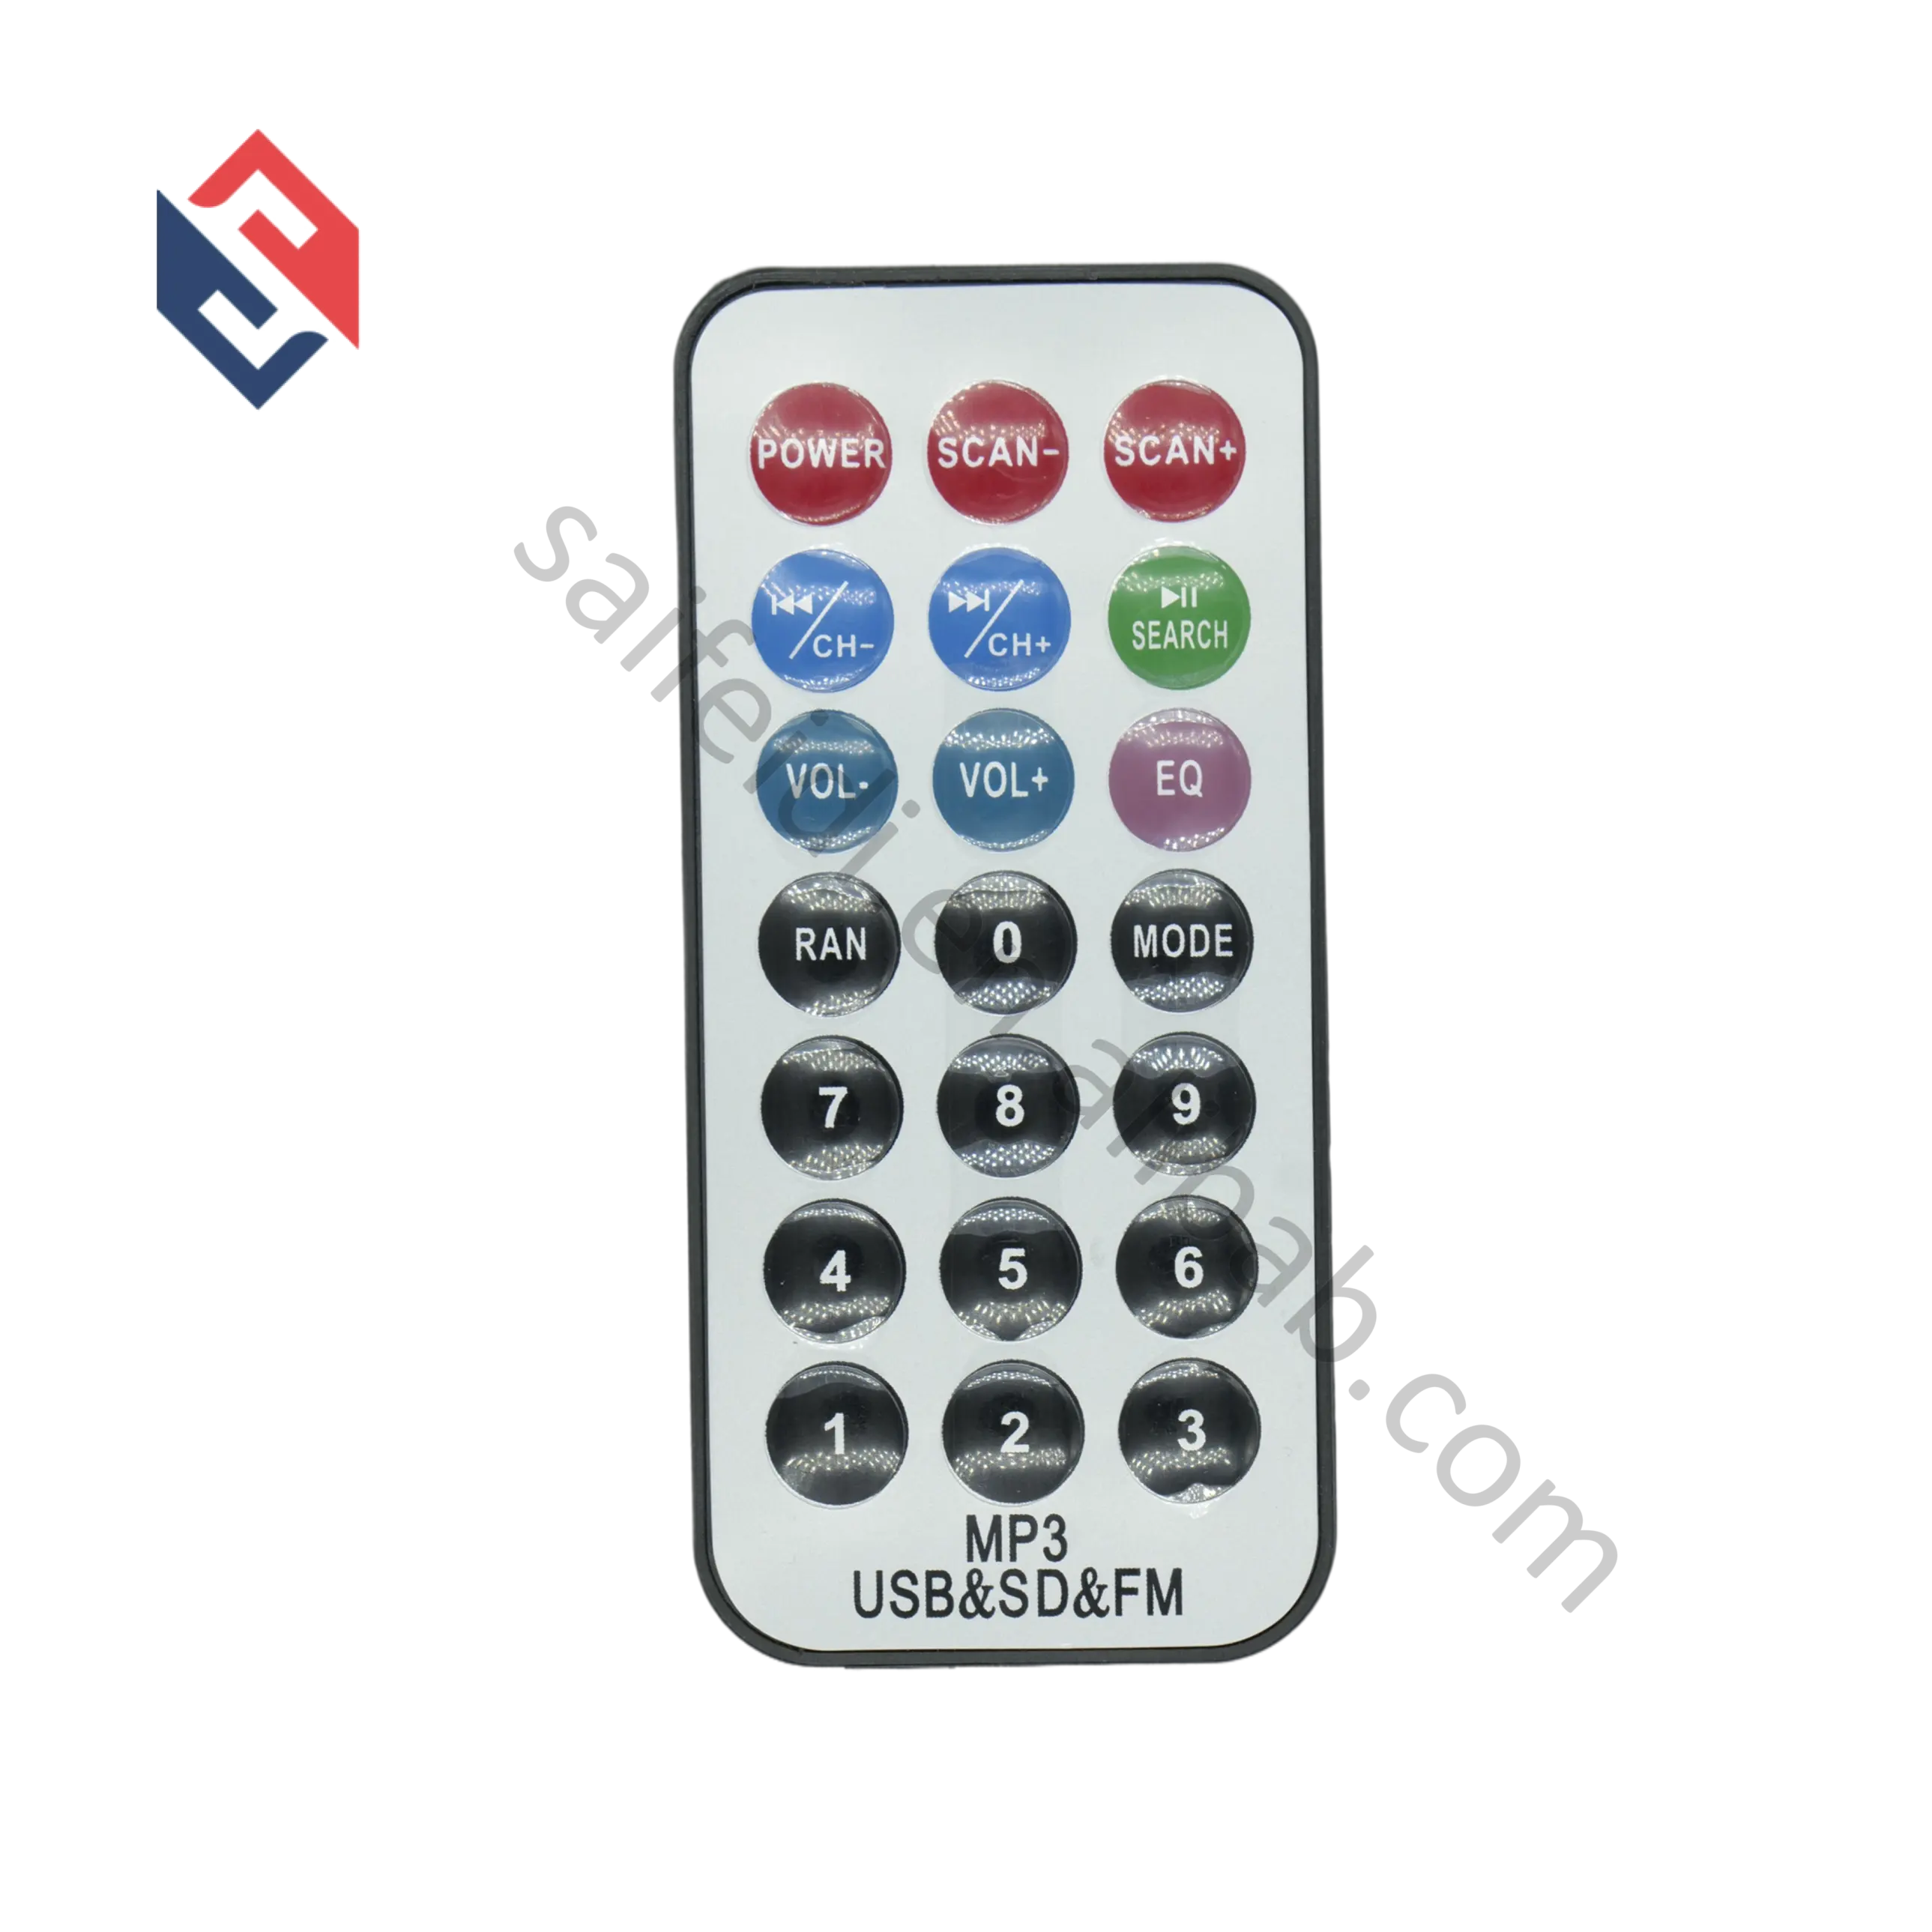 21 Keys mp3 decoder remote Car Audio Remote Control IR Remote Control Learning Car CD DVD MP3